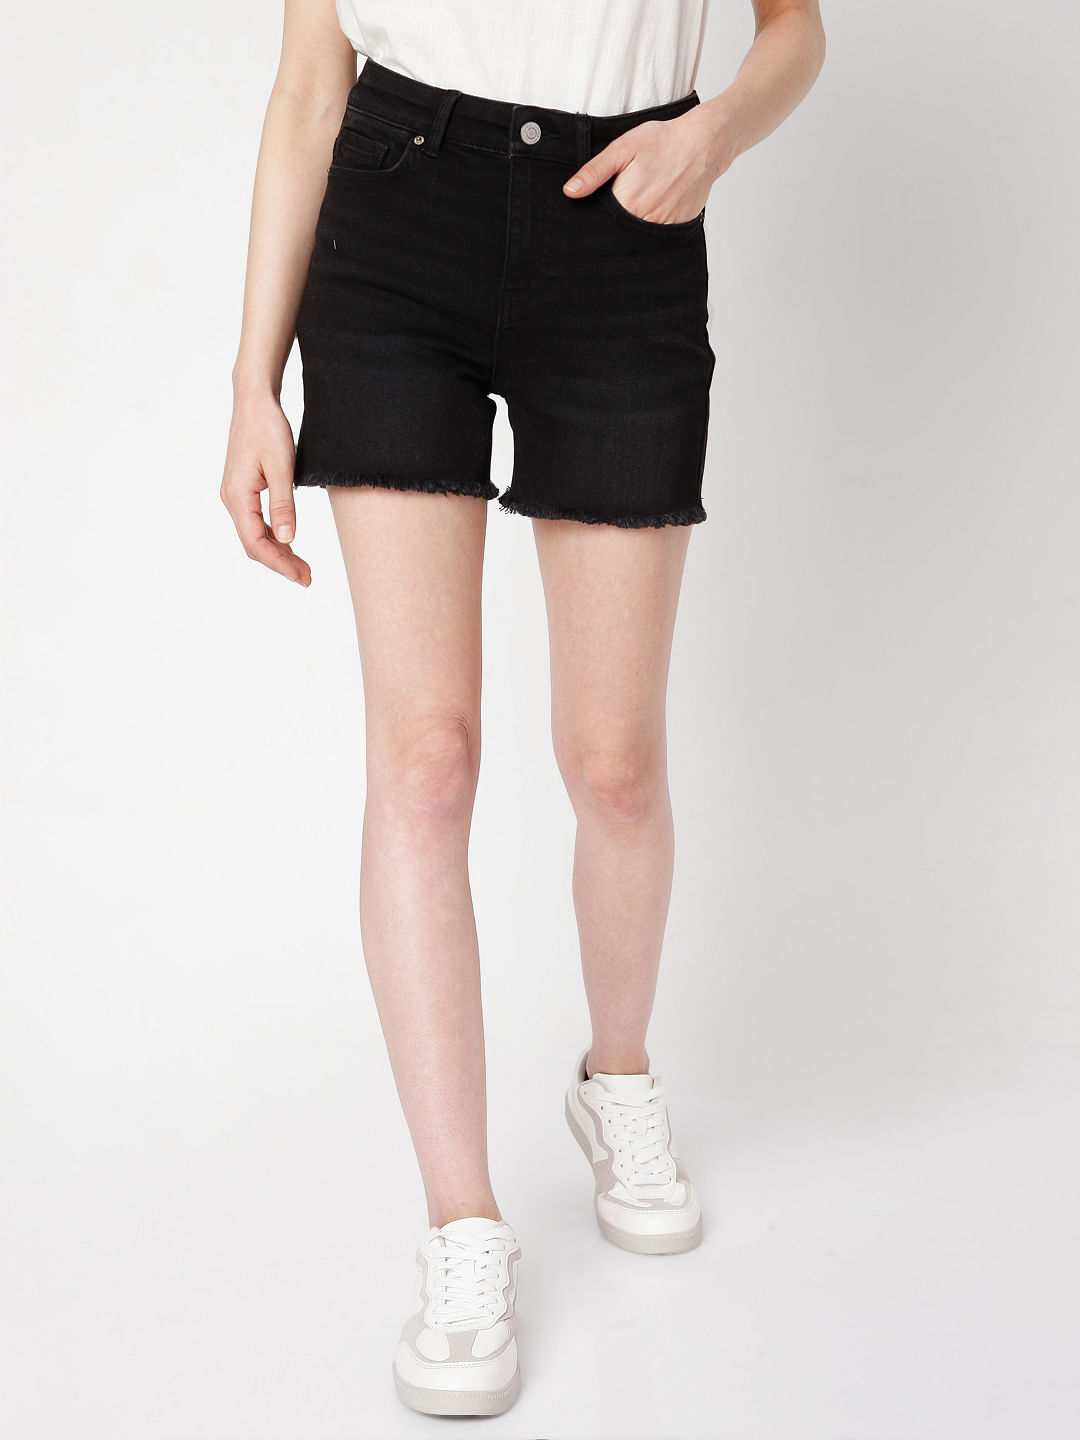 Shorts – Just Black Denim